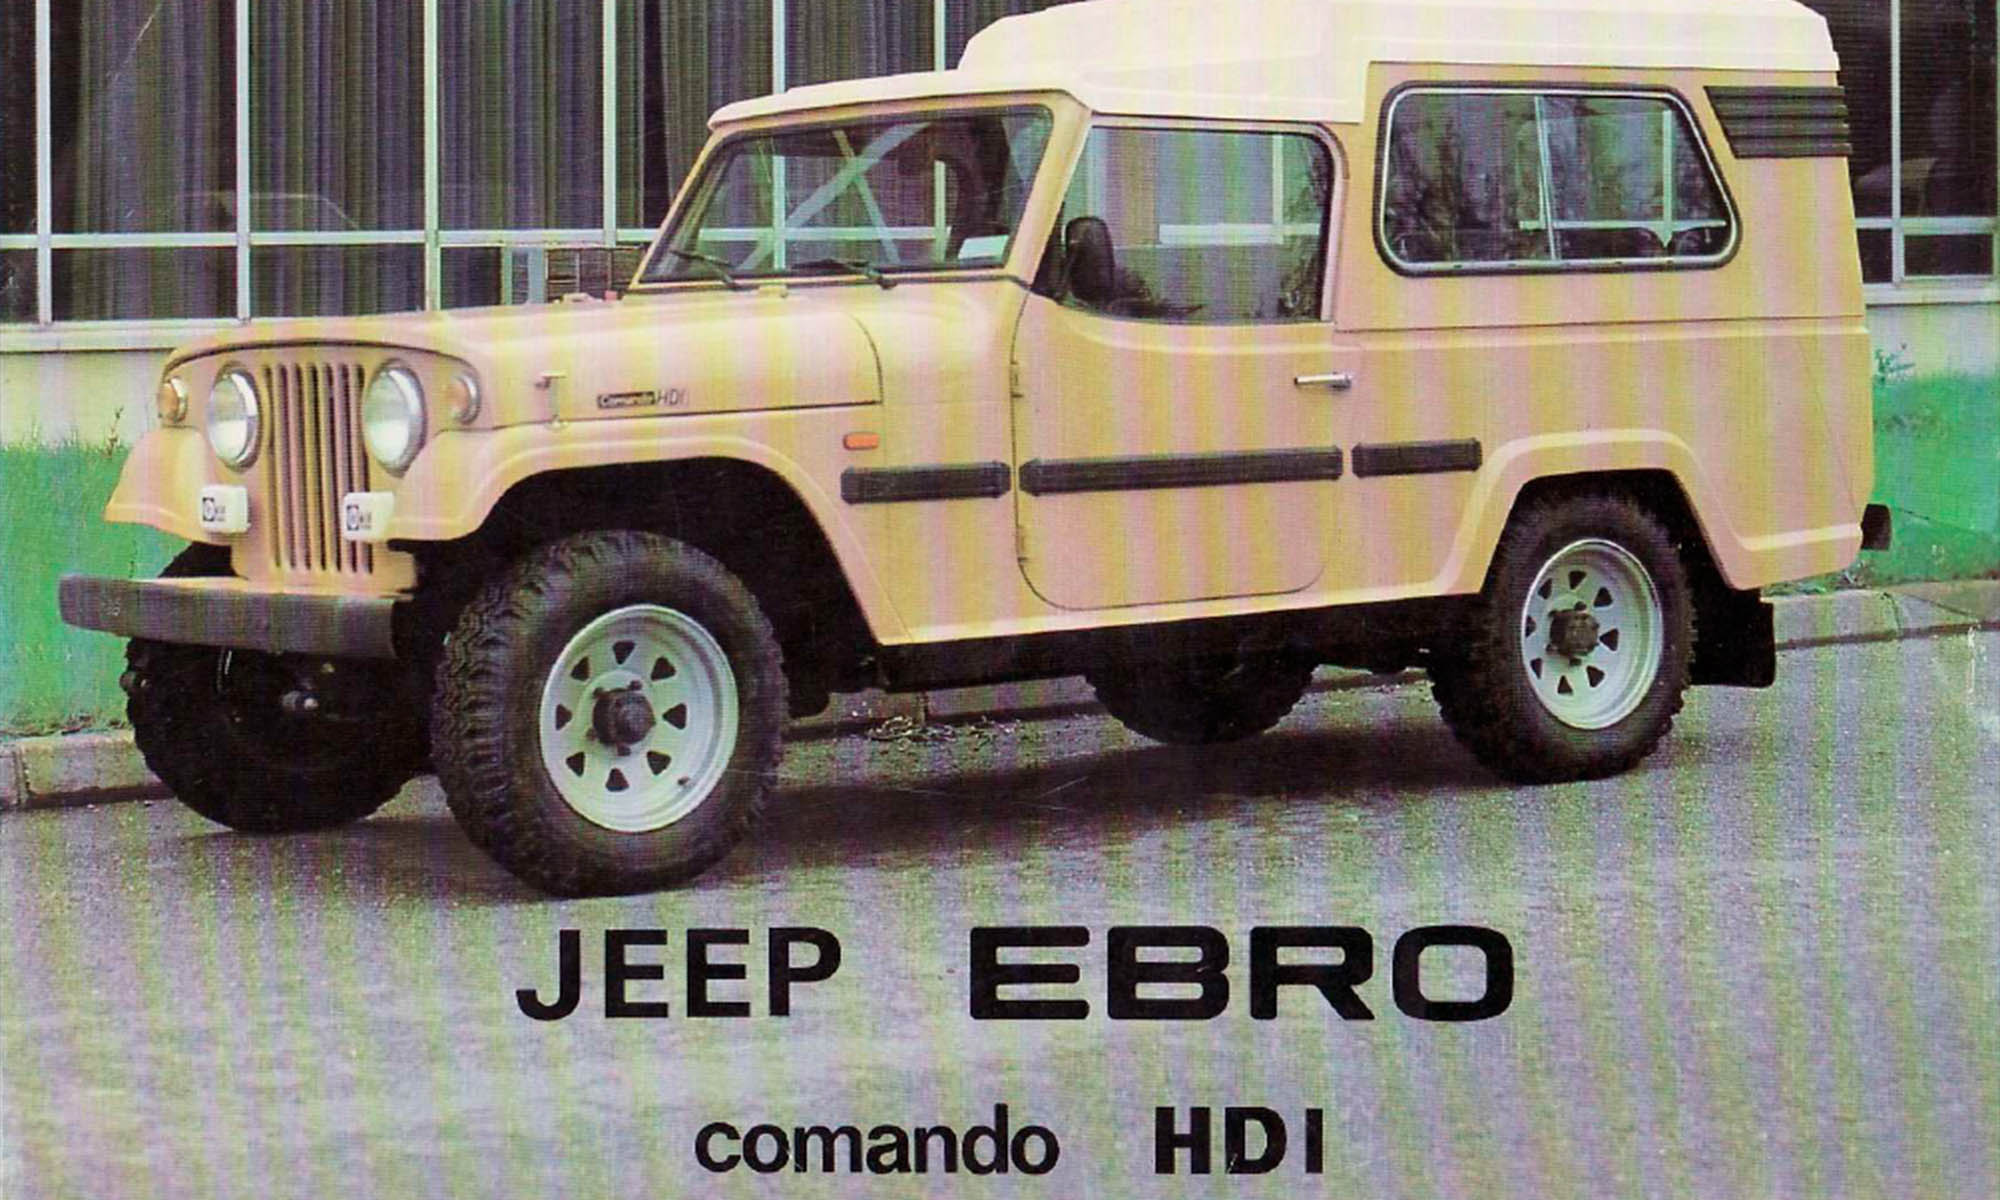 Los todoterrenos de Jeep se vendieron en sus últimos años bajo la marca Jeep-Ebro.